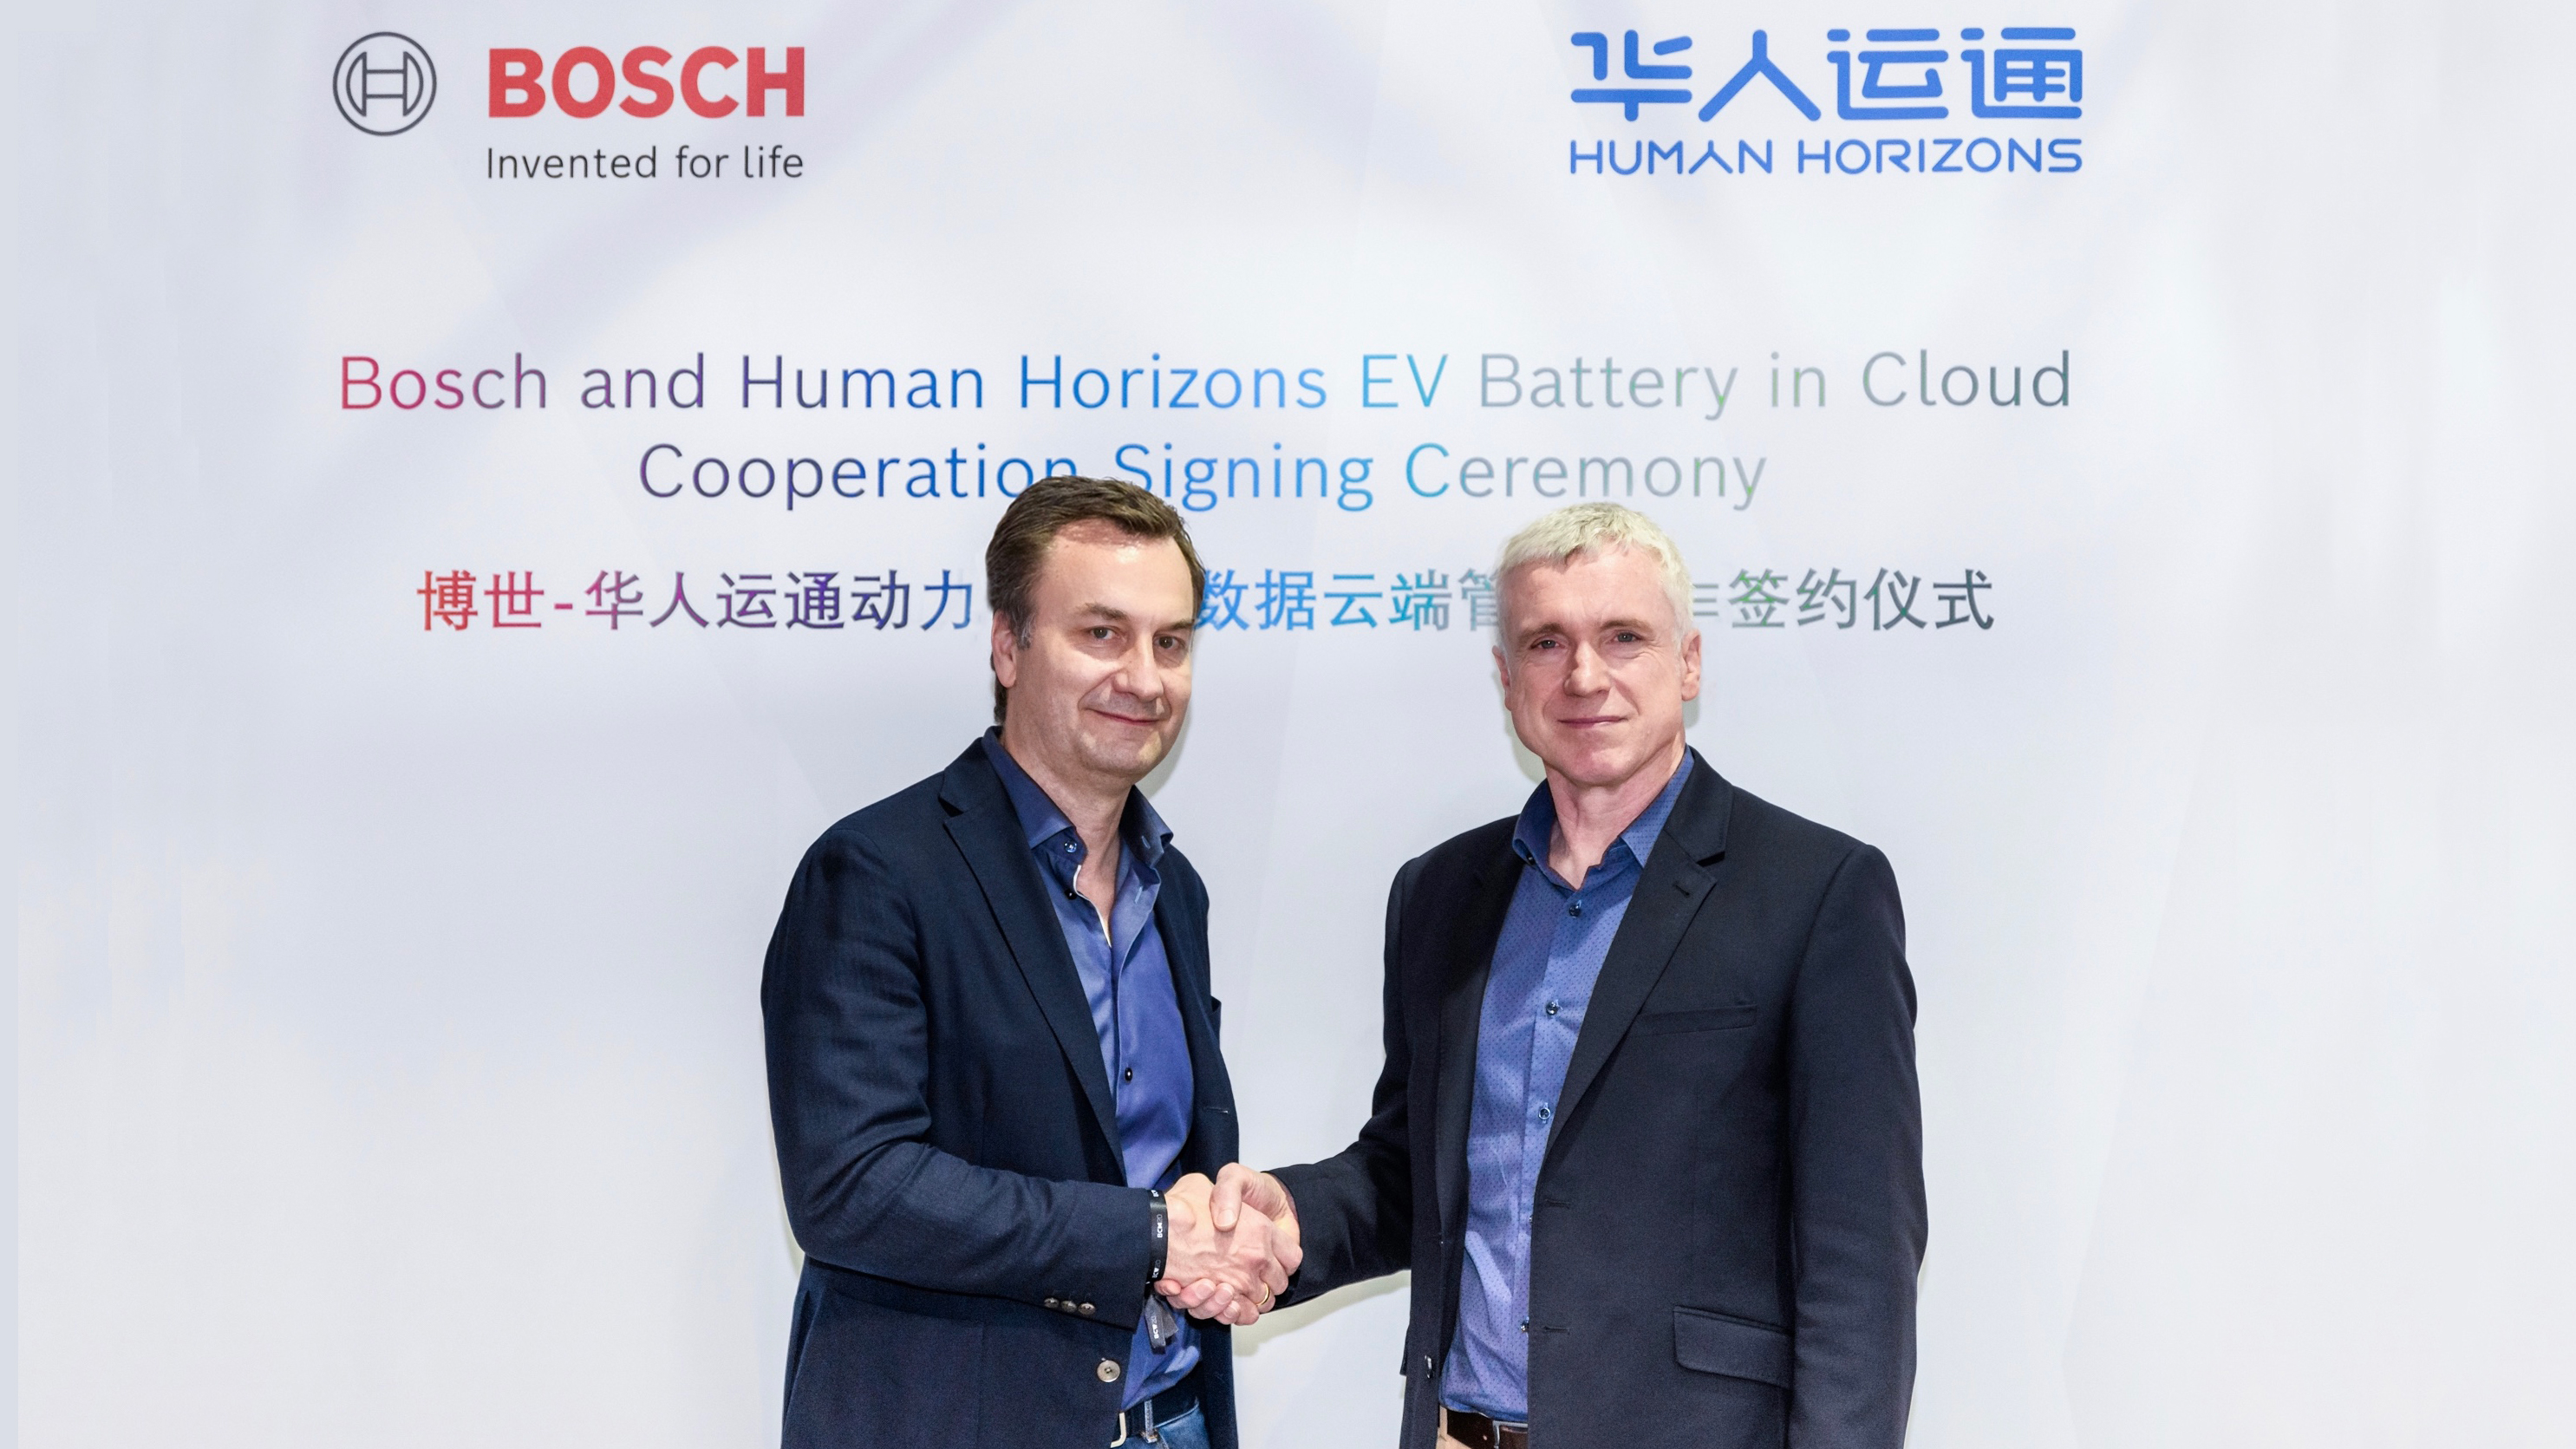 华人运通CTO Mark Stanton (右)与博世全球智能网联事业部总裁 Elmar Pritsch(左)代表双方签署合作协议